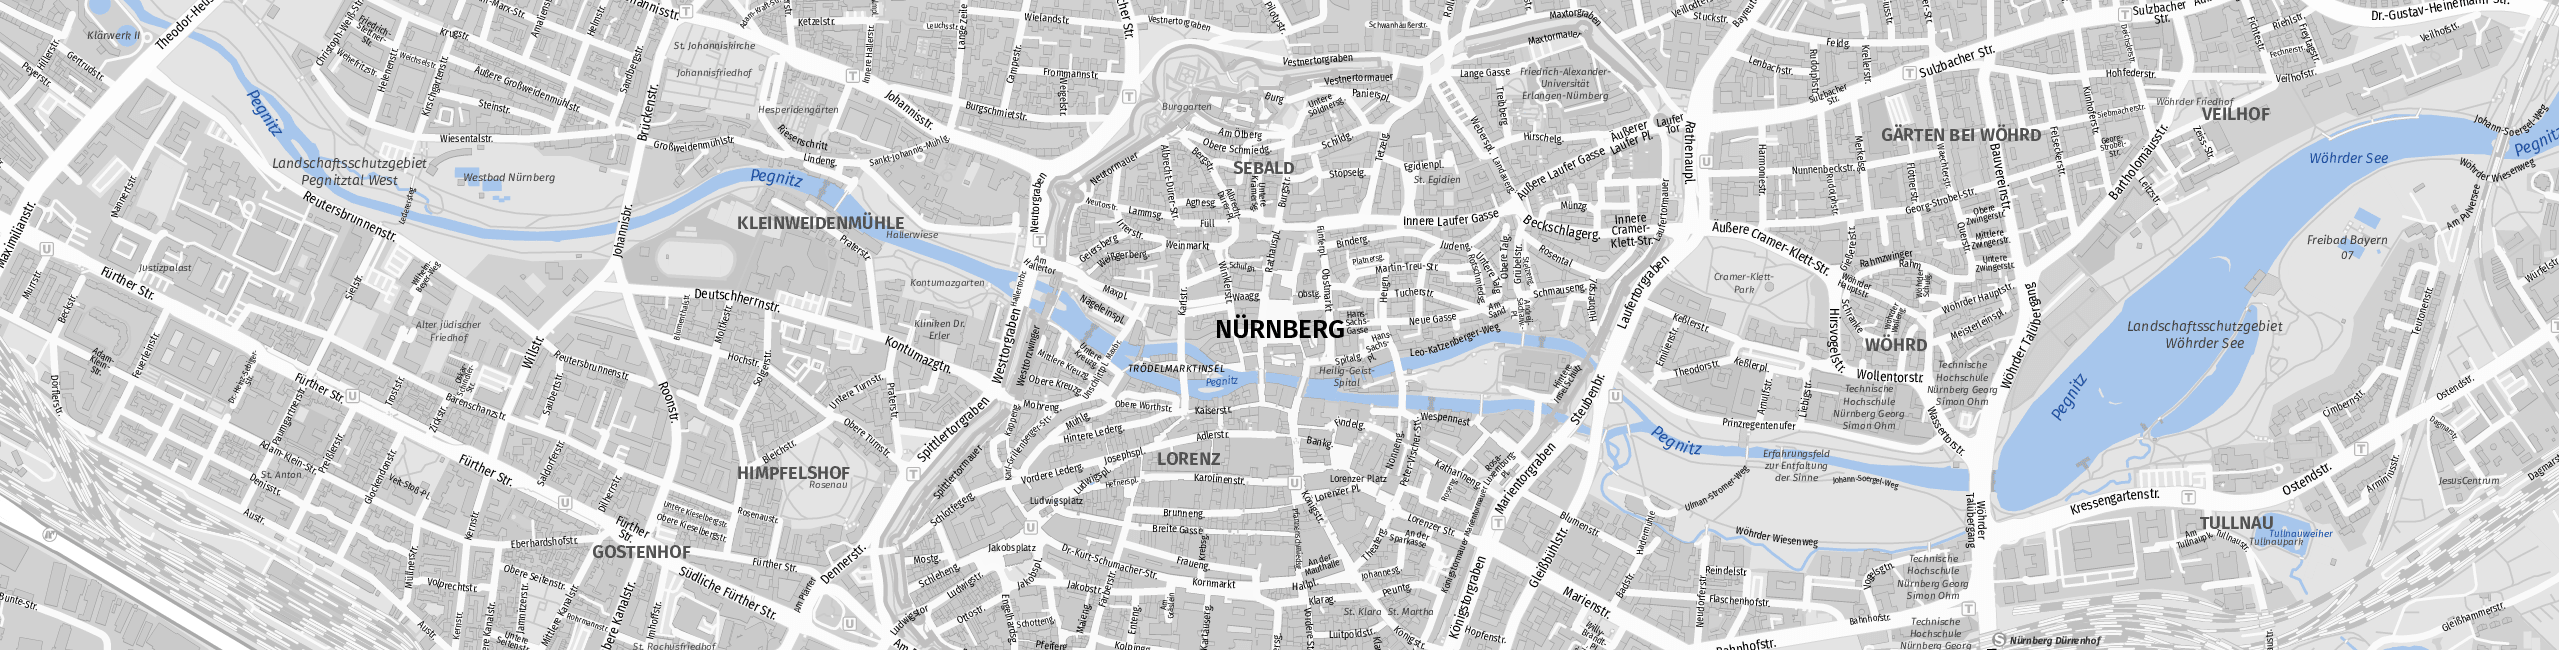 Stadtplan Nuremberg zum Downloaden.